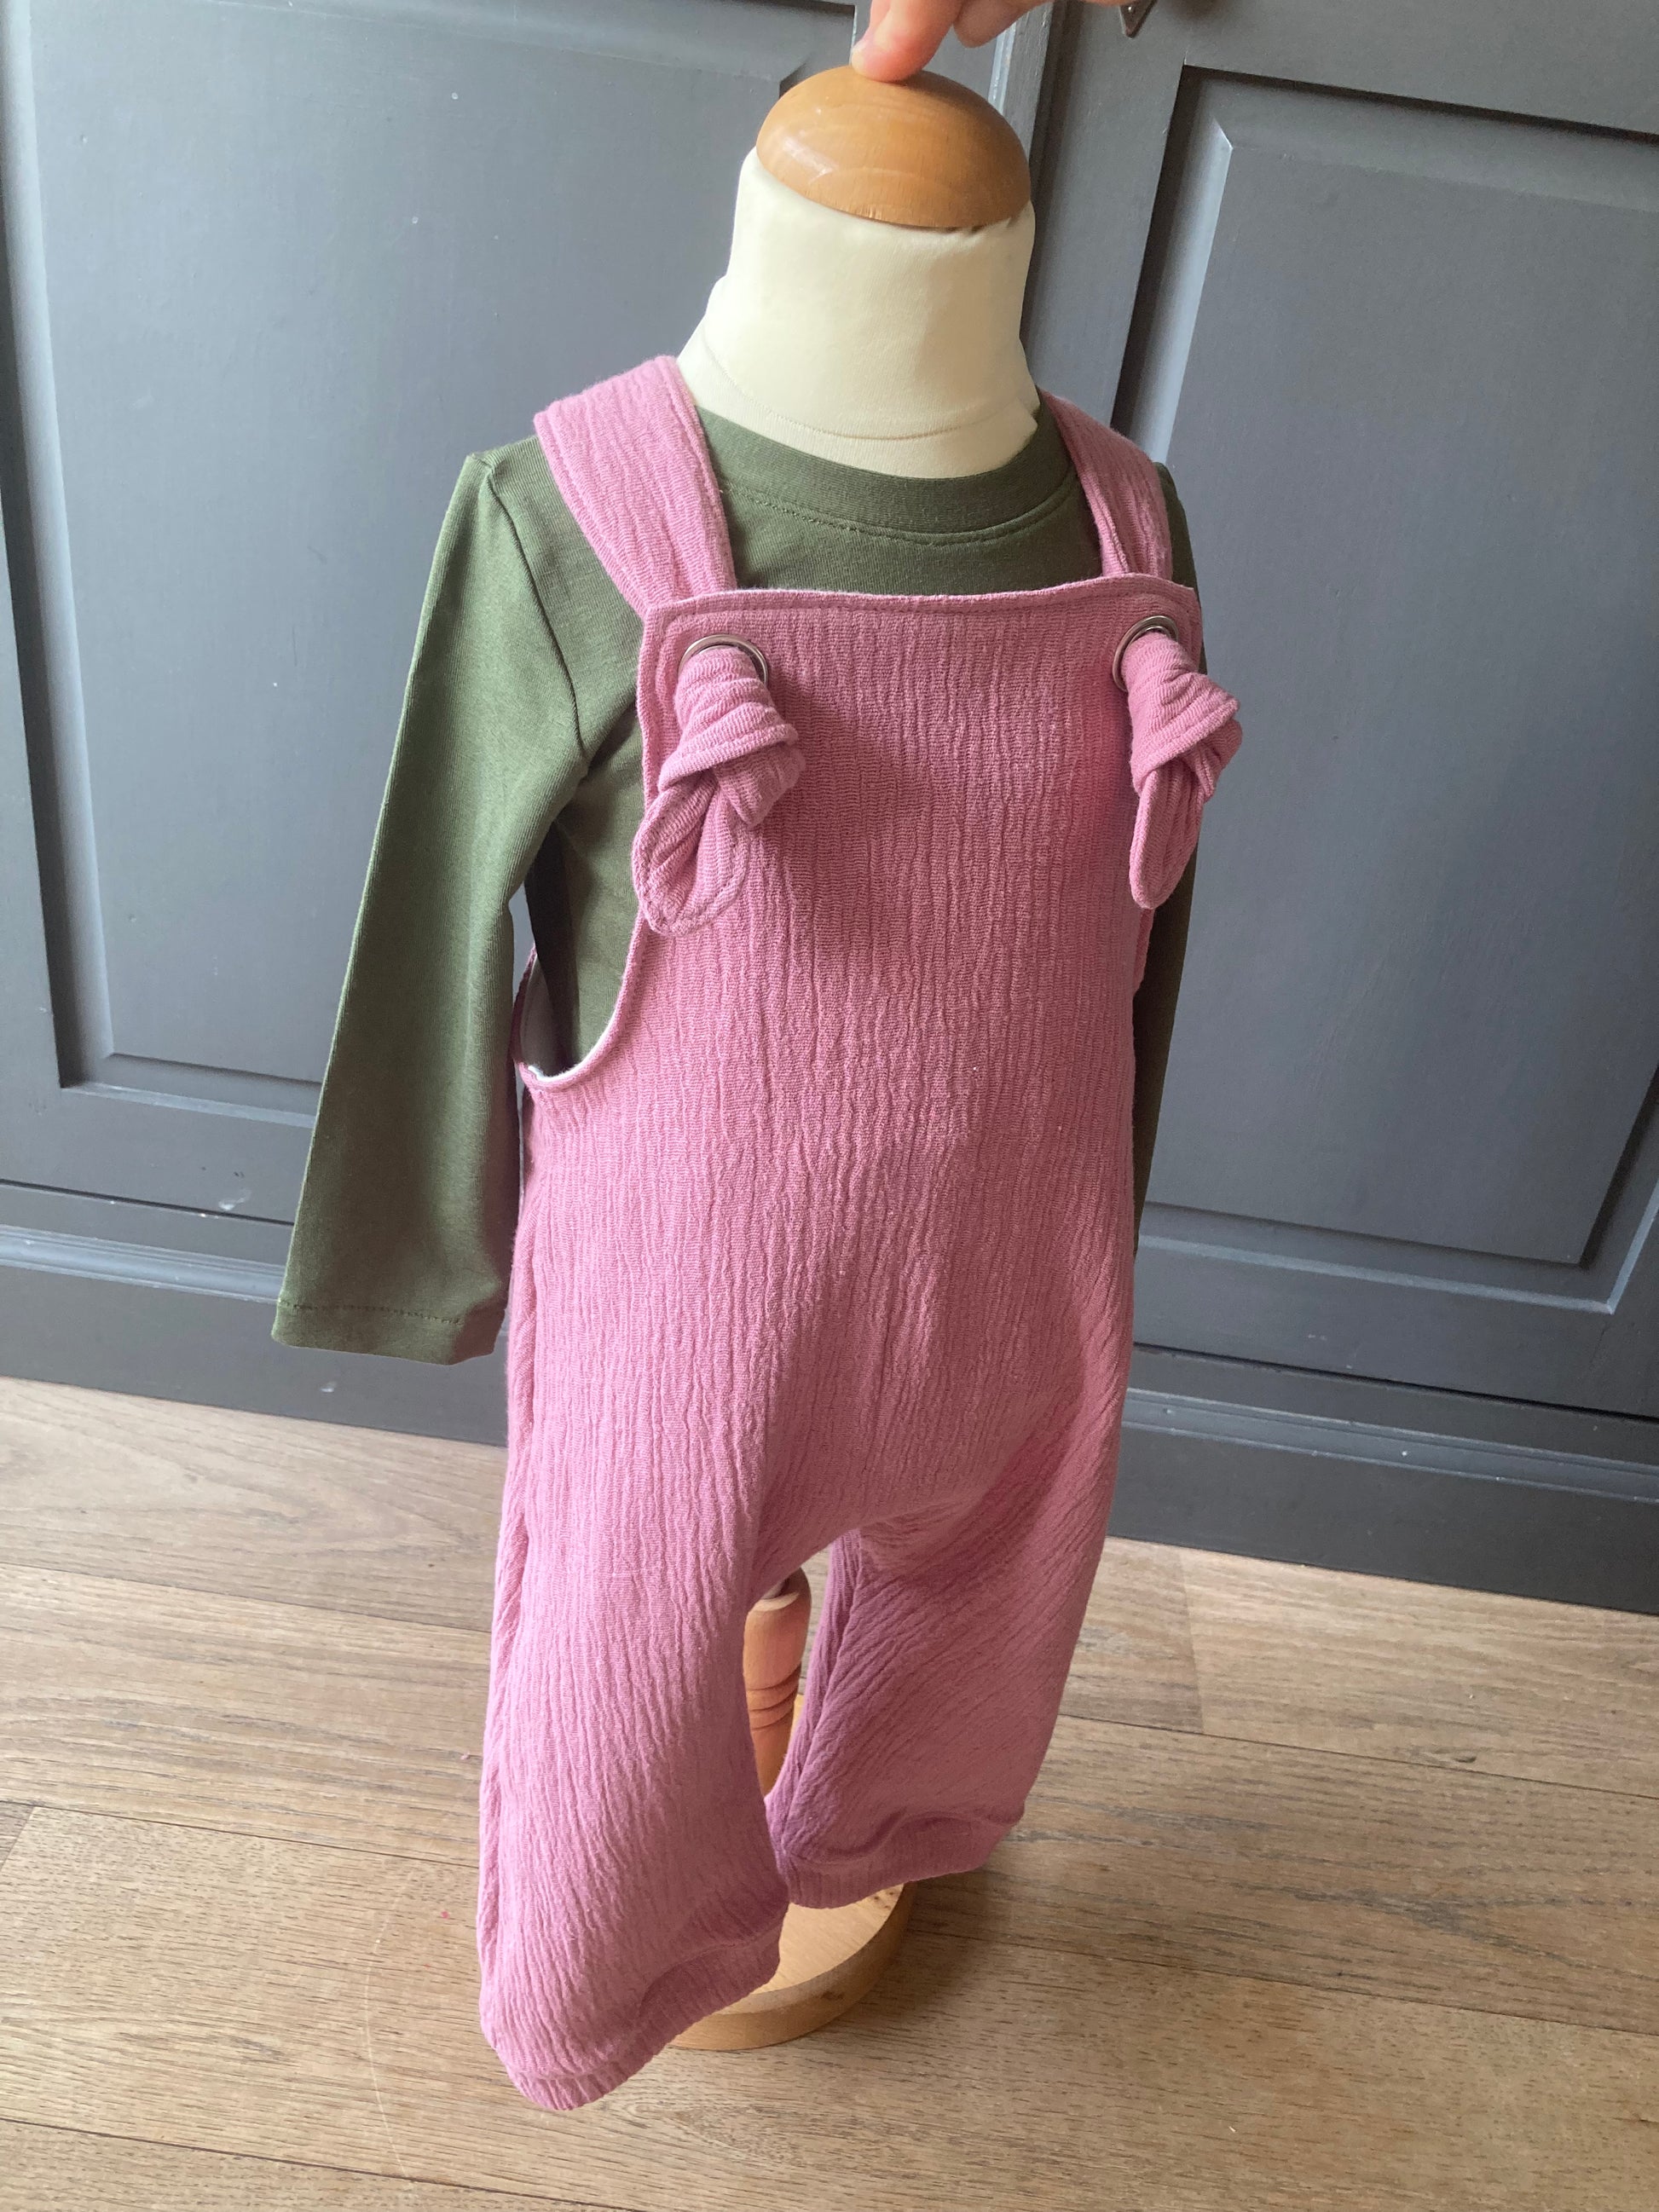 handgemaakte baby- en kinderkleding, roze tuinbroek overall met mosgroene longsleeve. Onderdeel van de collectie duurzame kinderkleding online van kinderkleding webshop Cuteez.